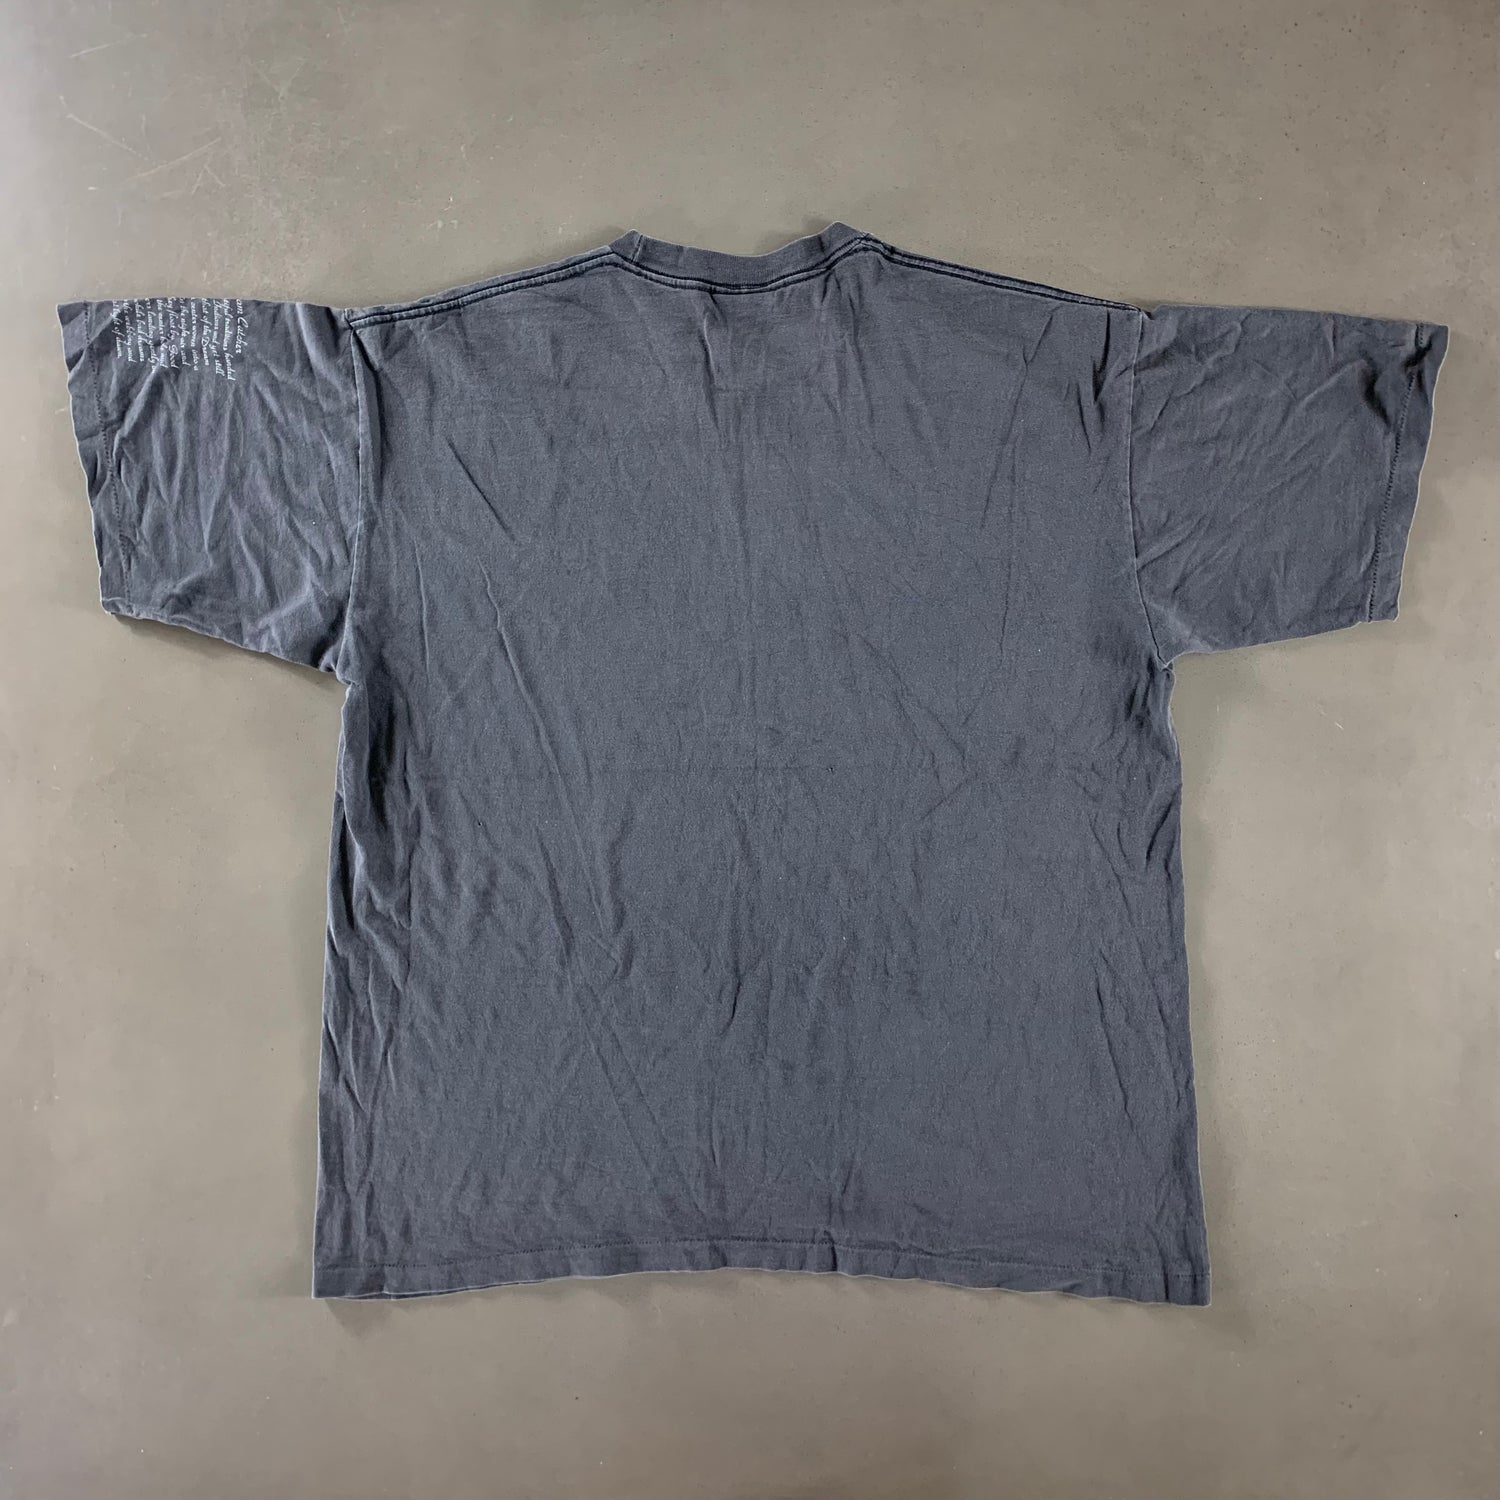 Vintage 1990s Dream Catcher T-shirt size XL